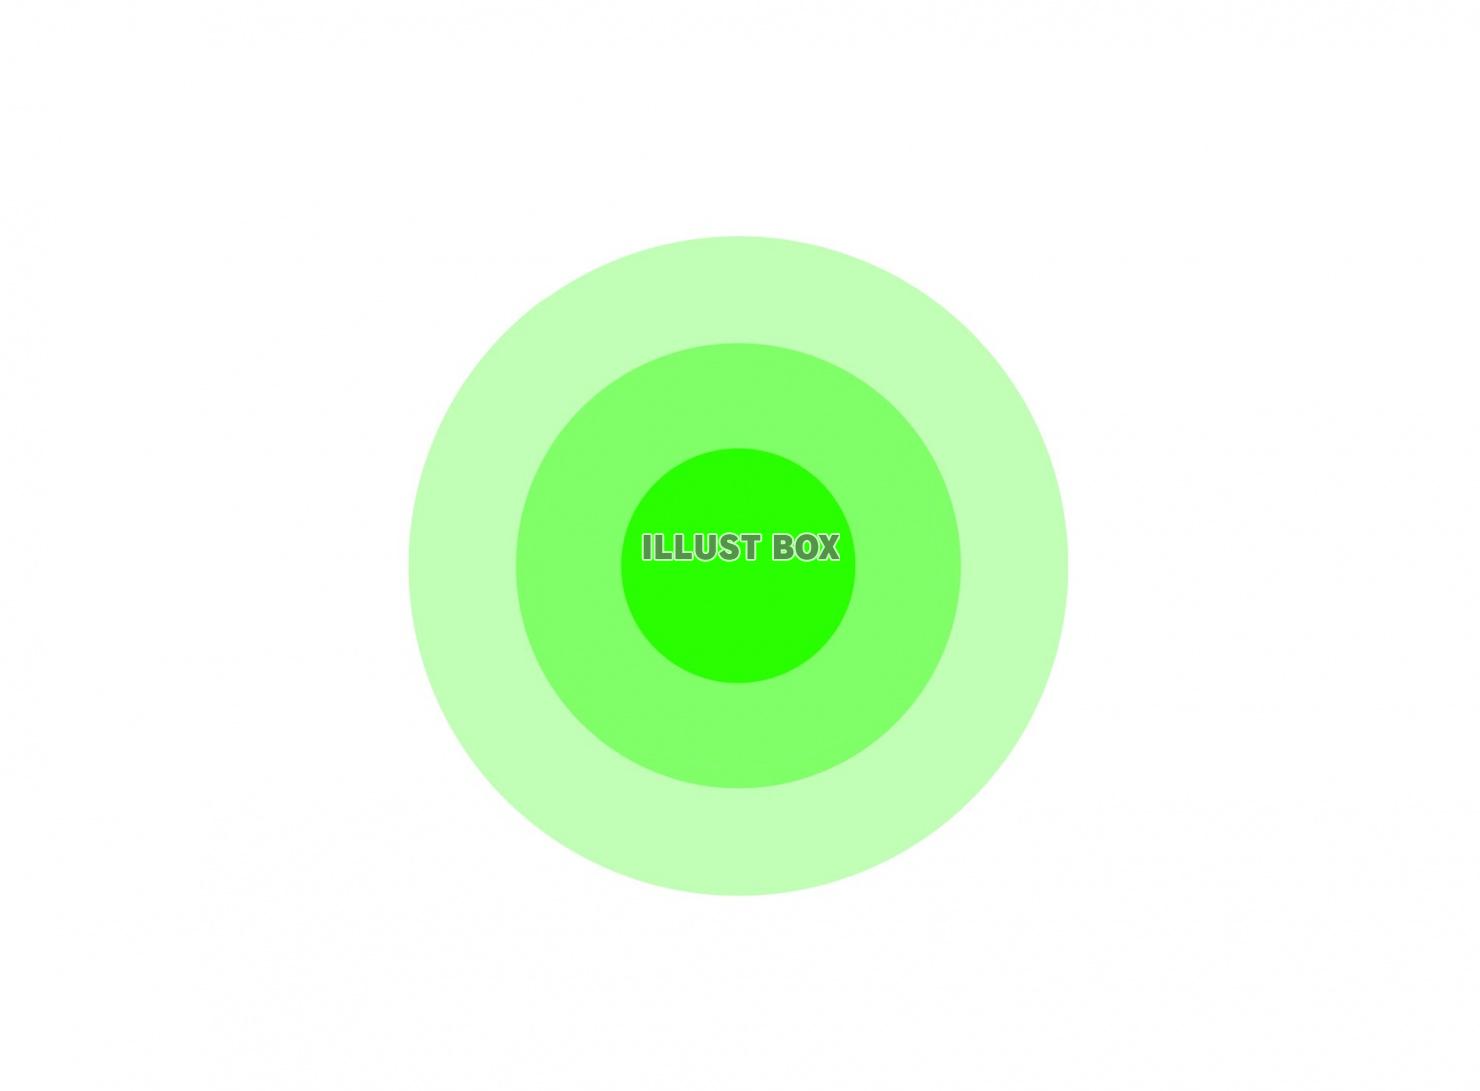 緑の円形レイアウト(背景)